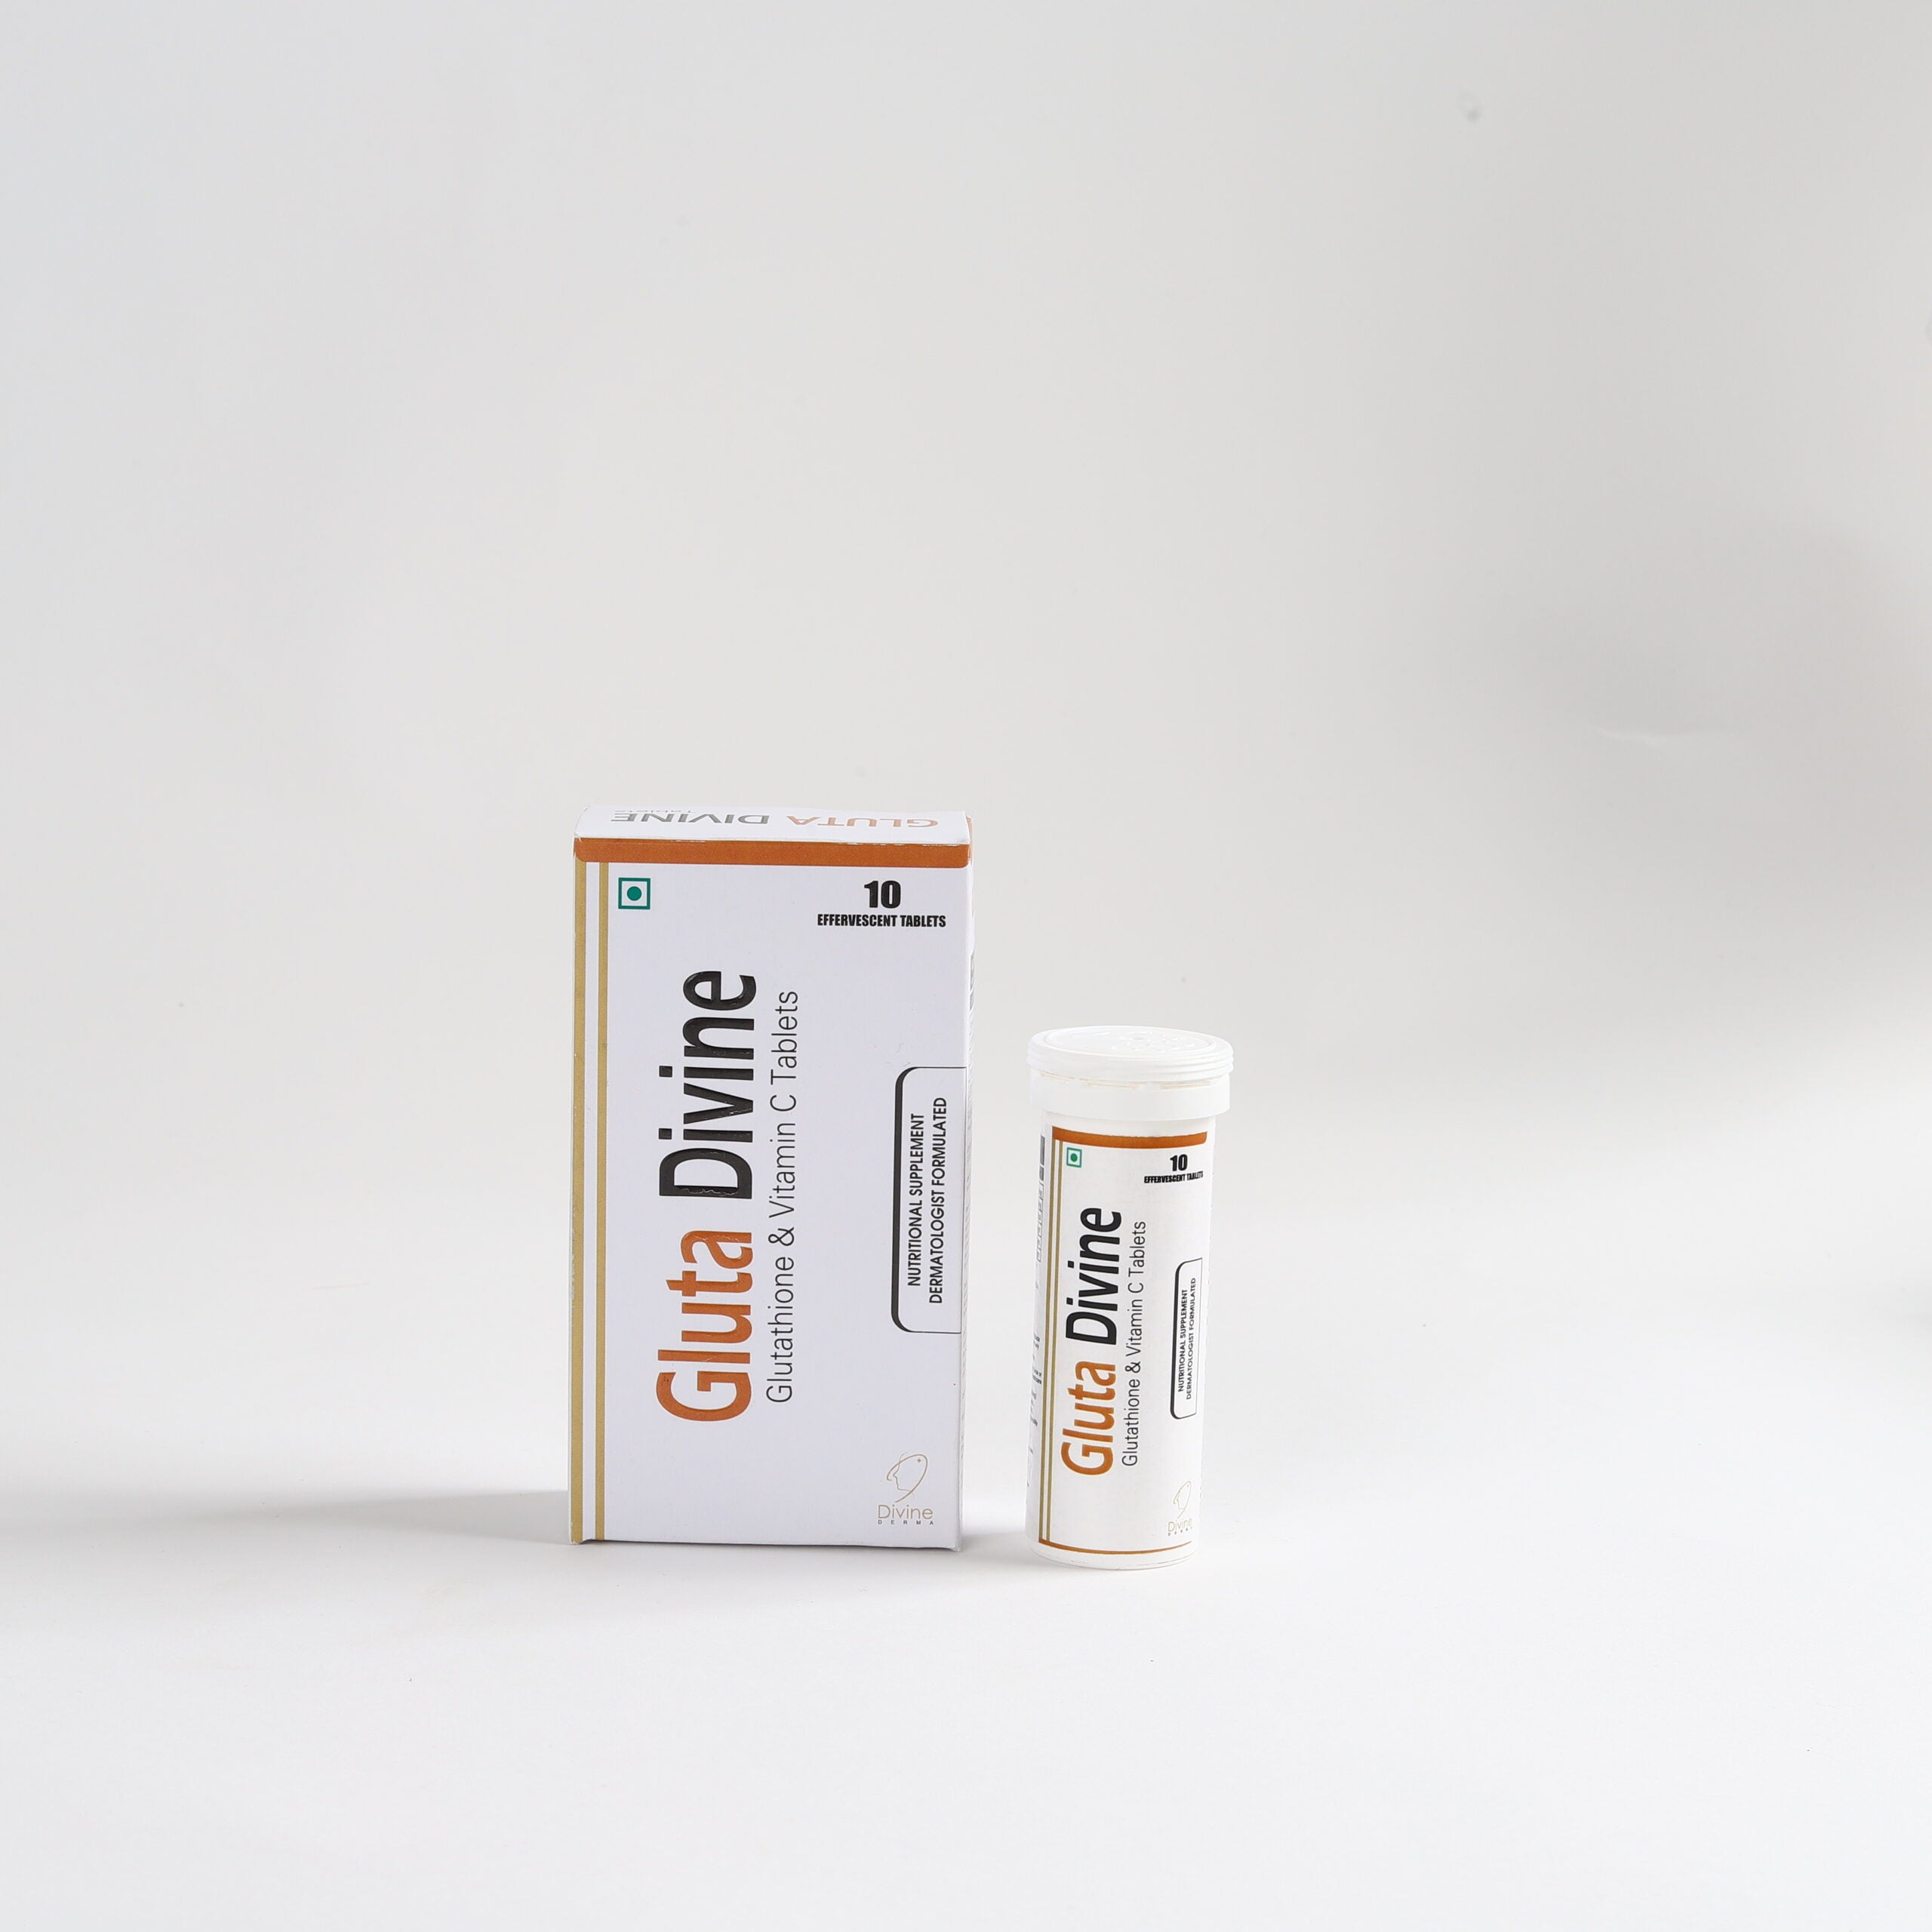 Gluta Divine (Glutathione & Vitamin C Tablet)